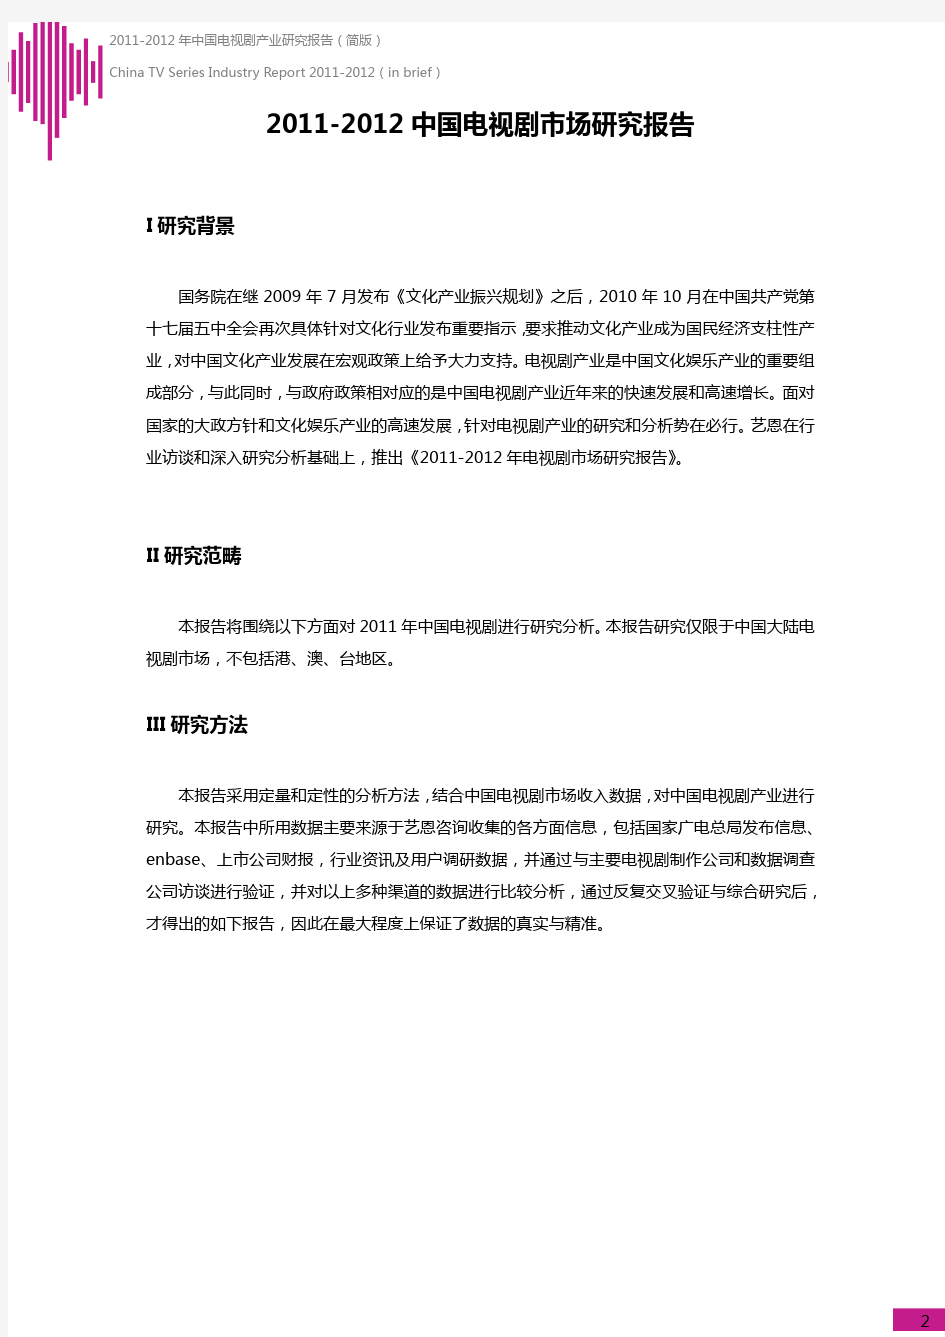 艺恩-2011-2012年中国电视剧市场研究报告(简版)